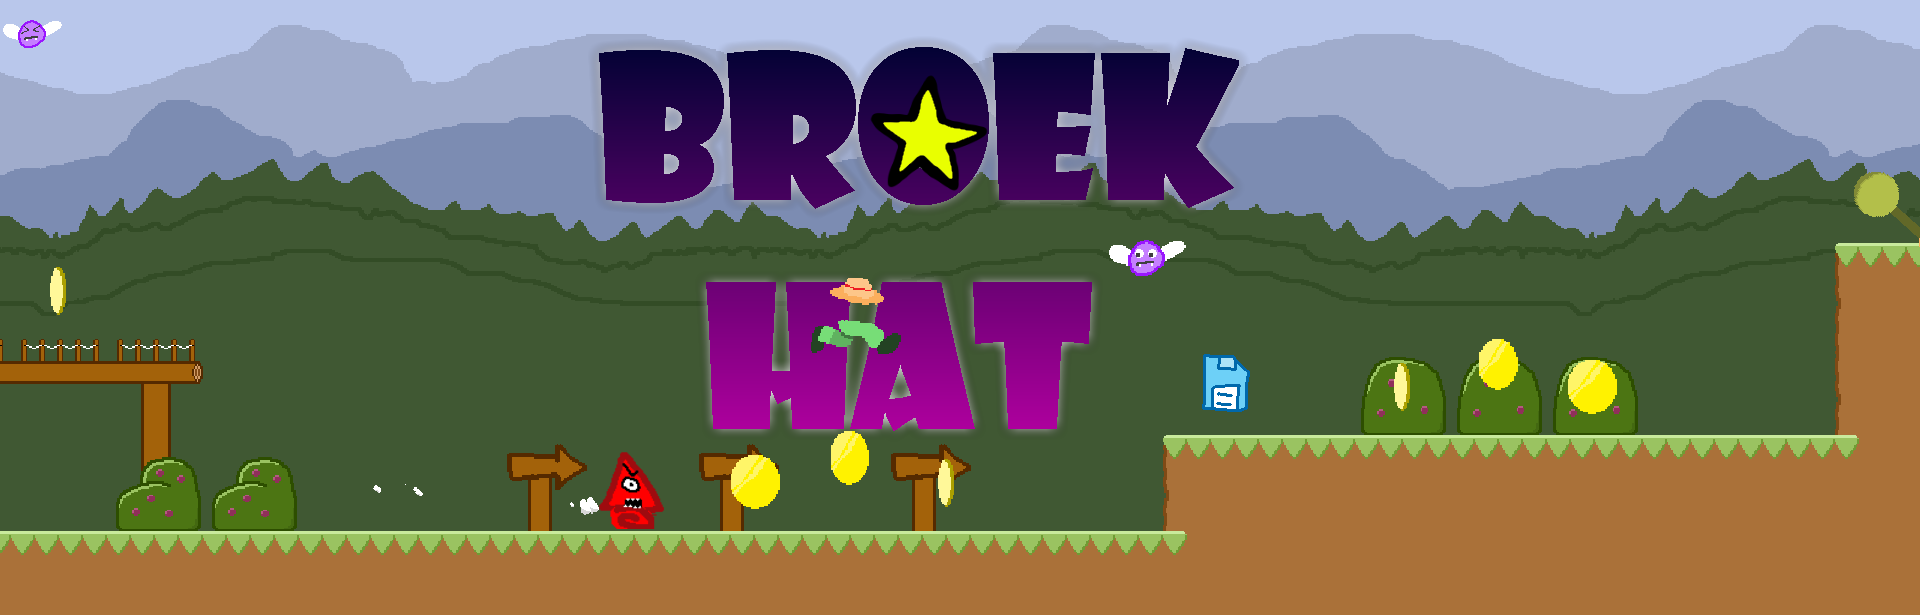 BroekHat